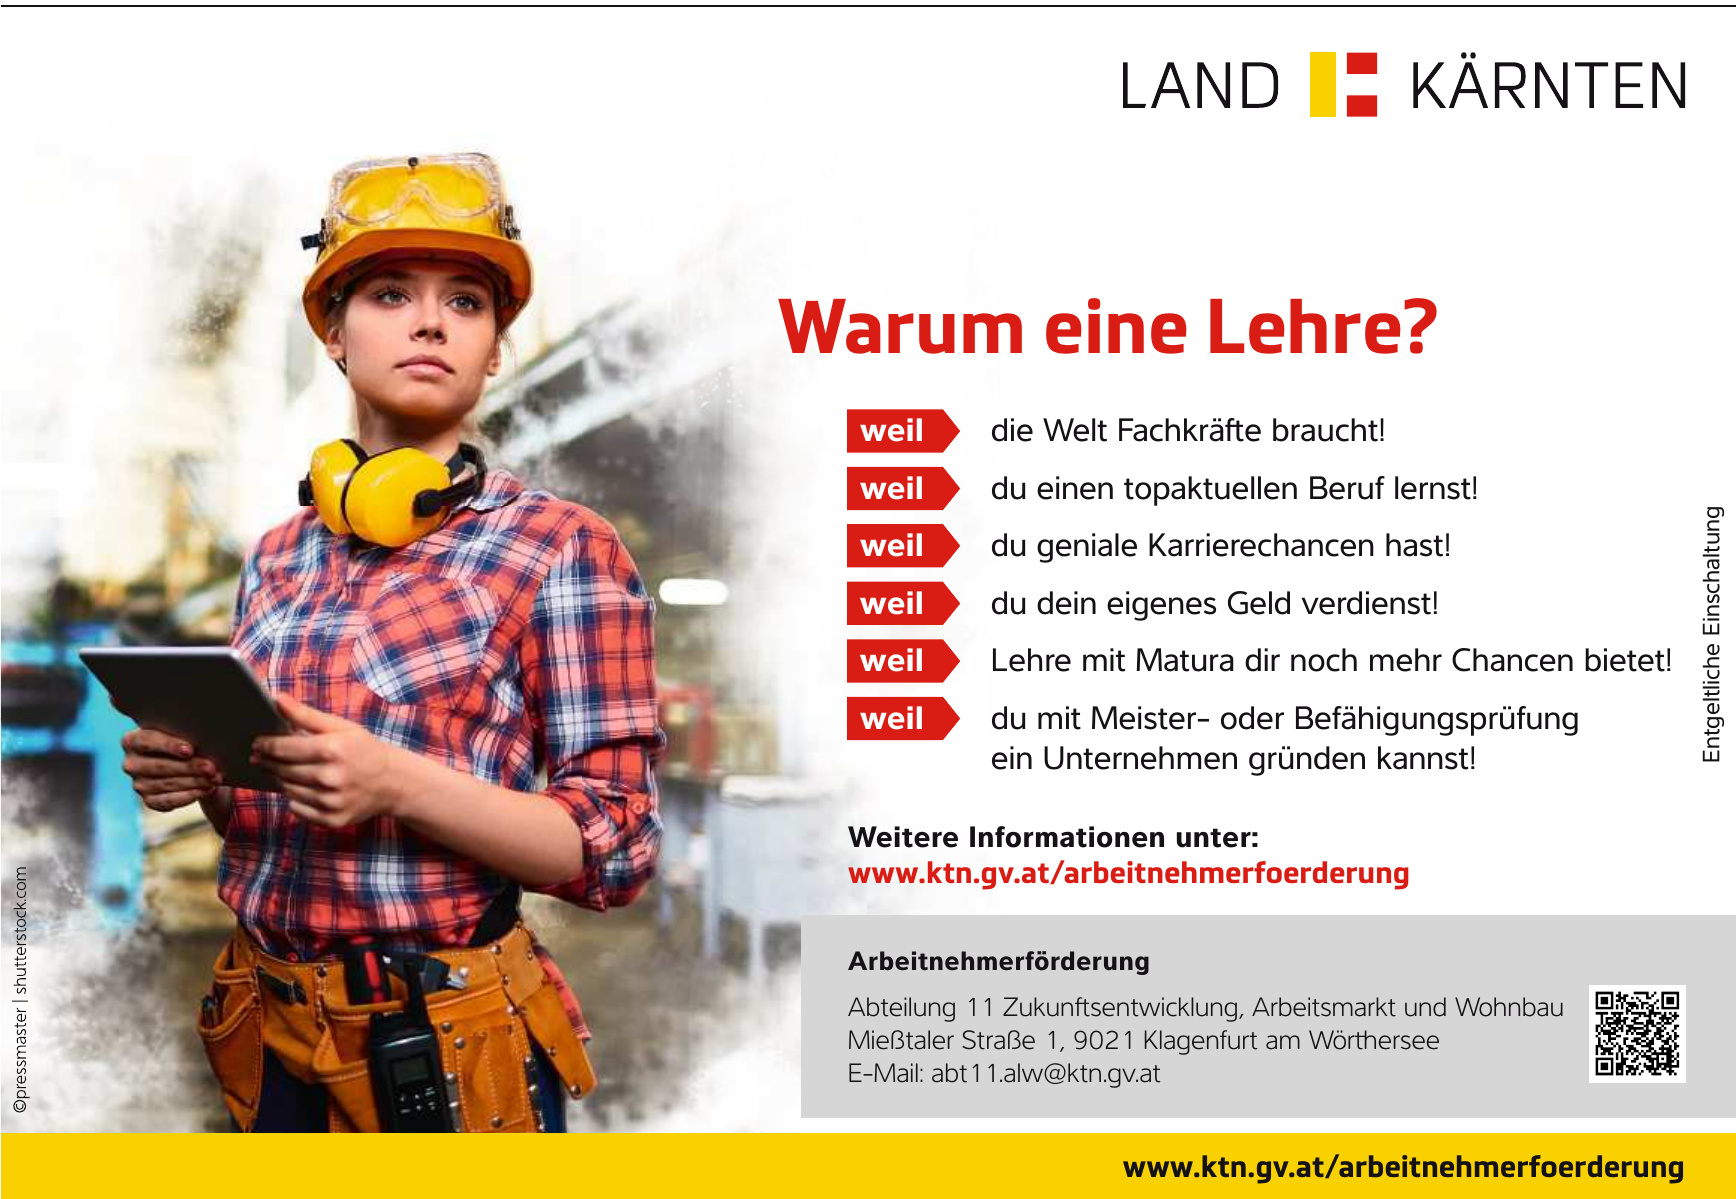 Land Kärnten: Abteilung 11 Zukunftsentwicklung, Arbeitsmarkt und Wohnbau